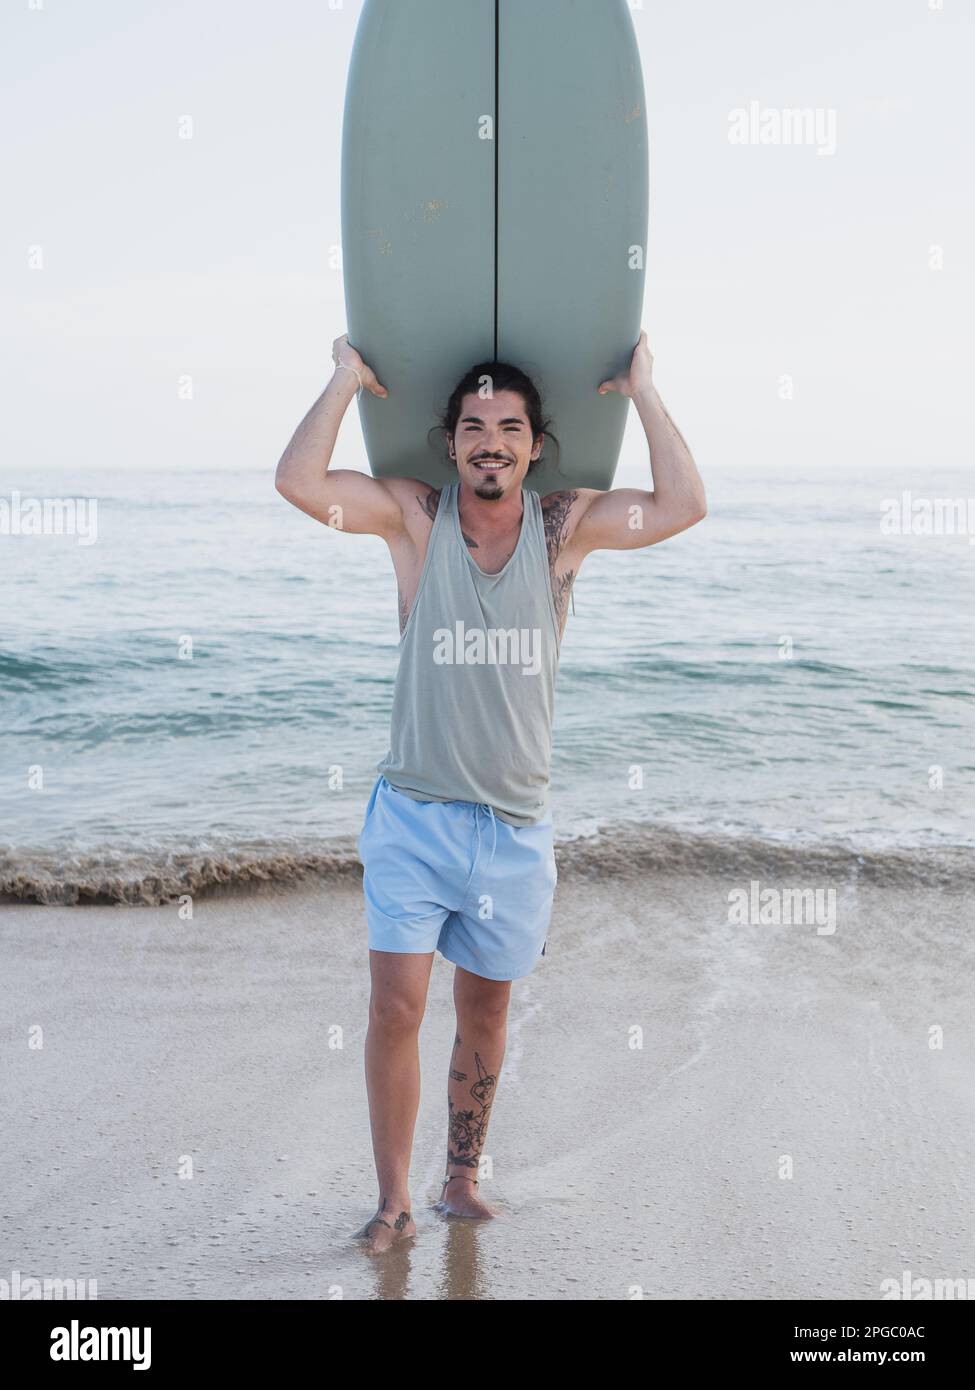 Hispanischer Surfer, der am Strand steht, lächelt und in die Kamera schaut Stockfoto